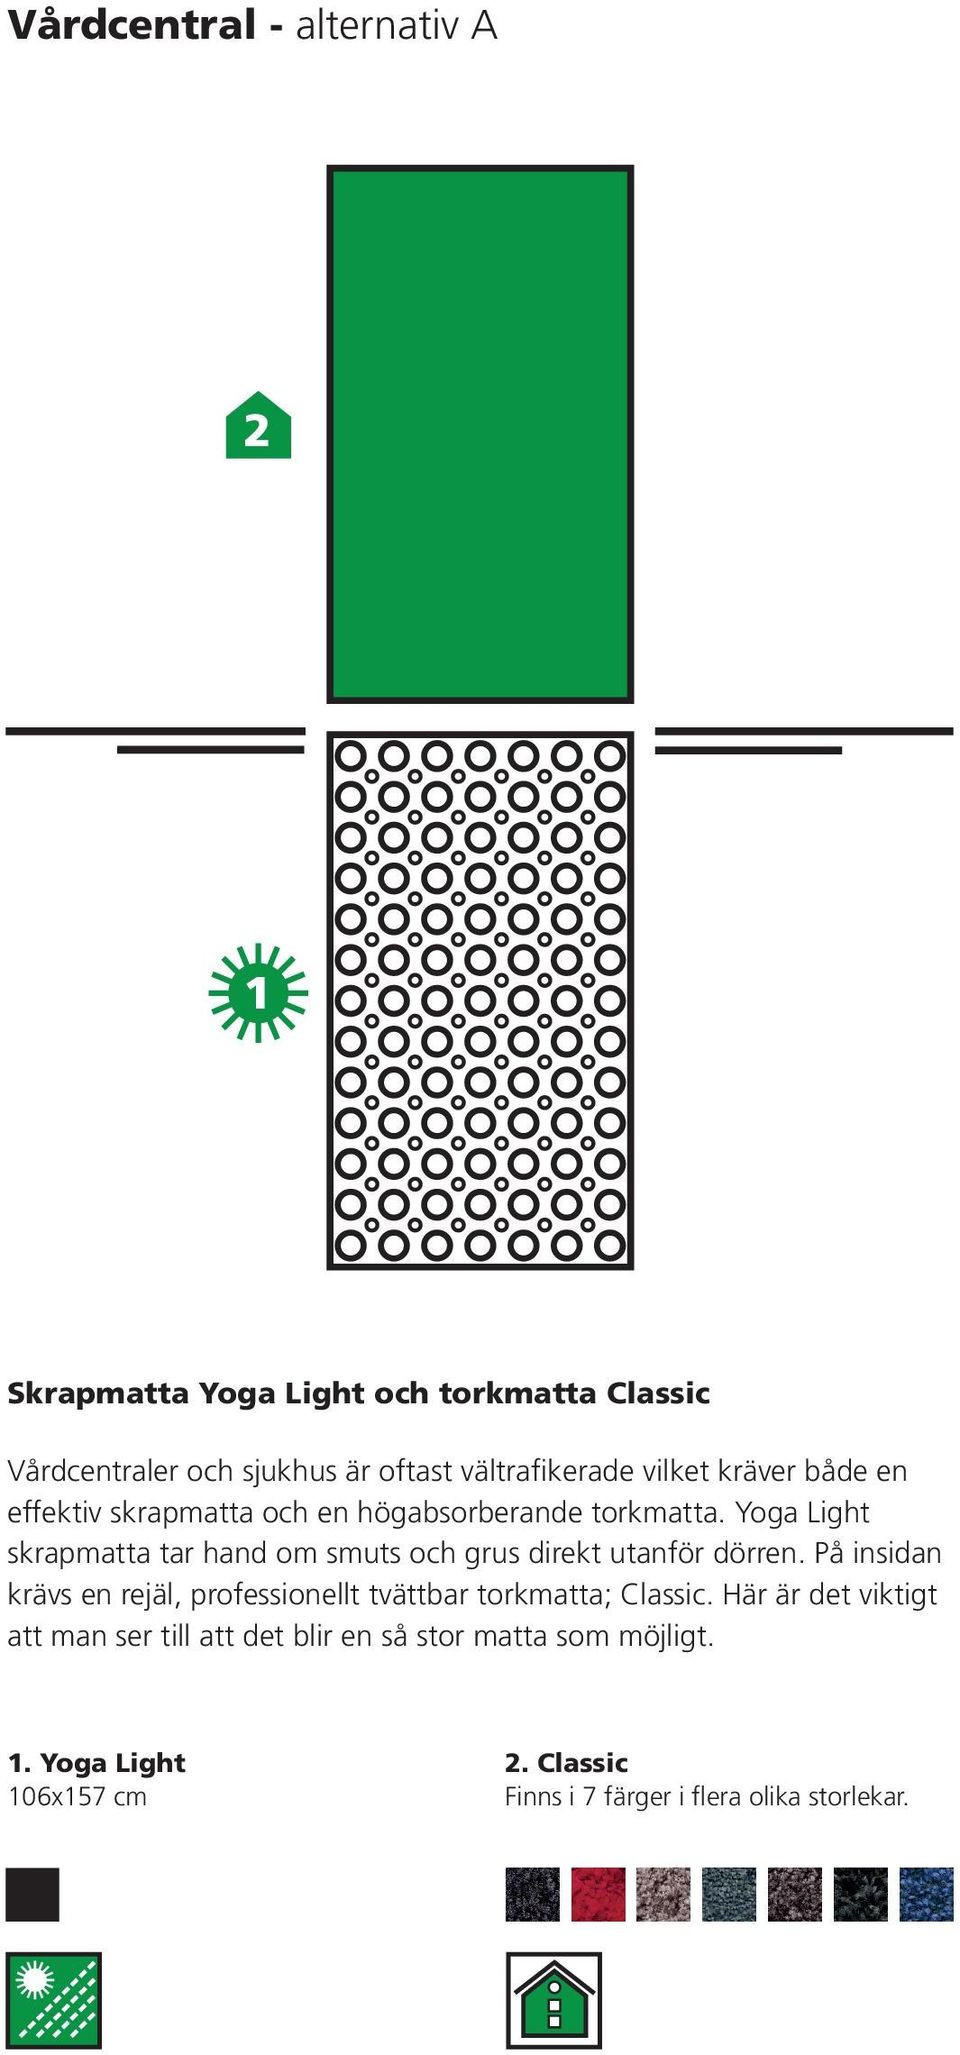 Yoga Light skrapmatta tar hand om smuts och grus direkt utanför dörren.